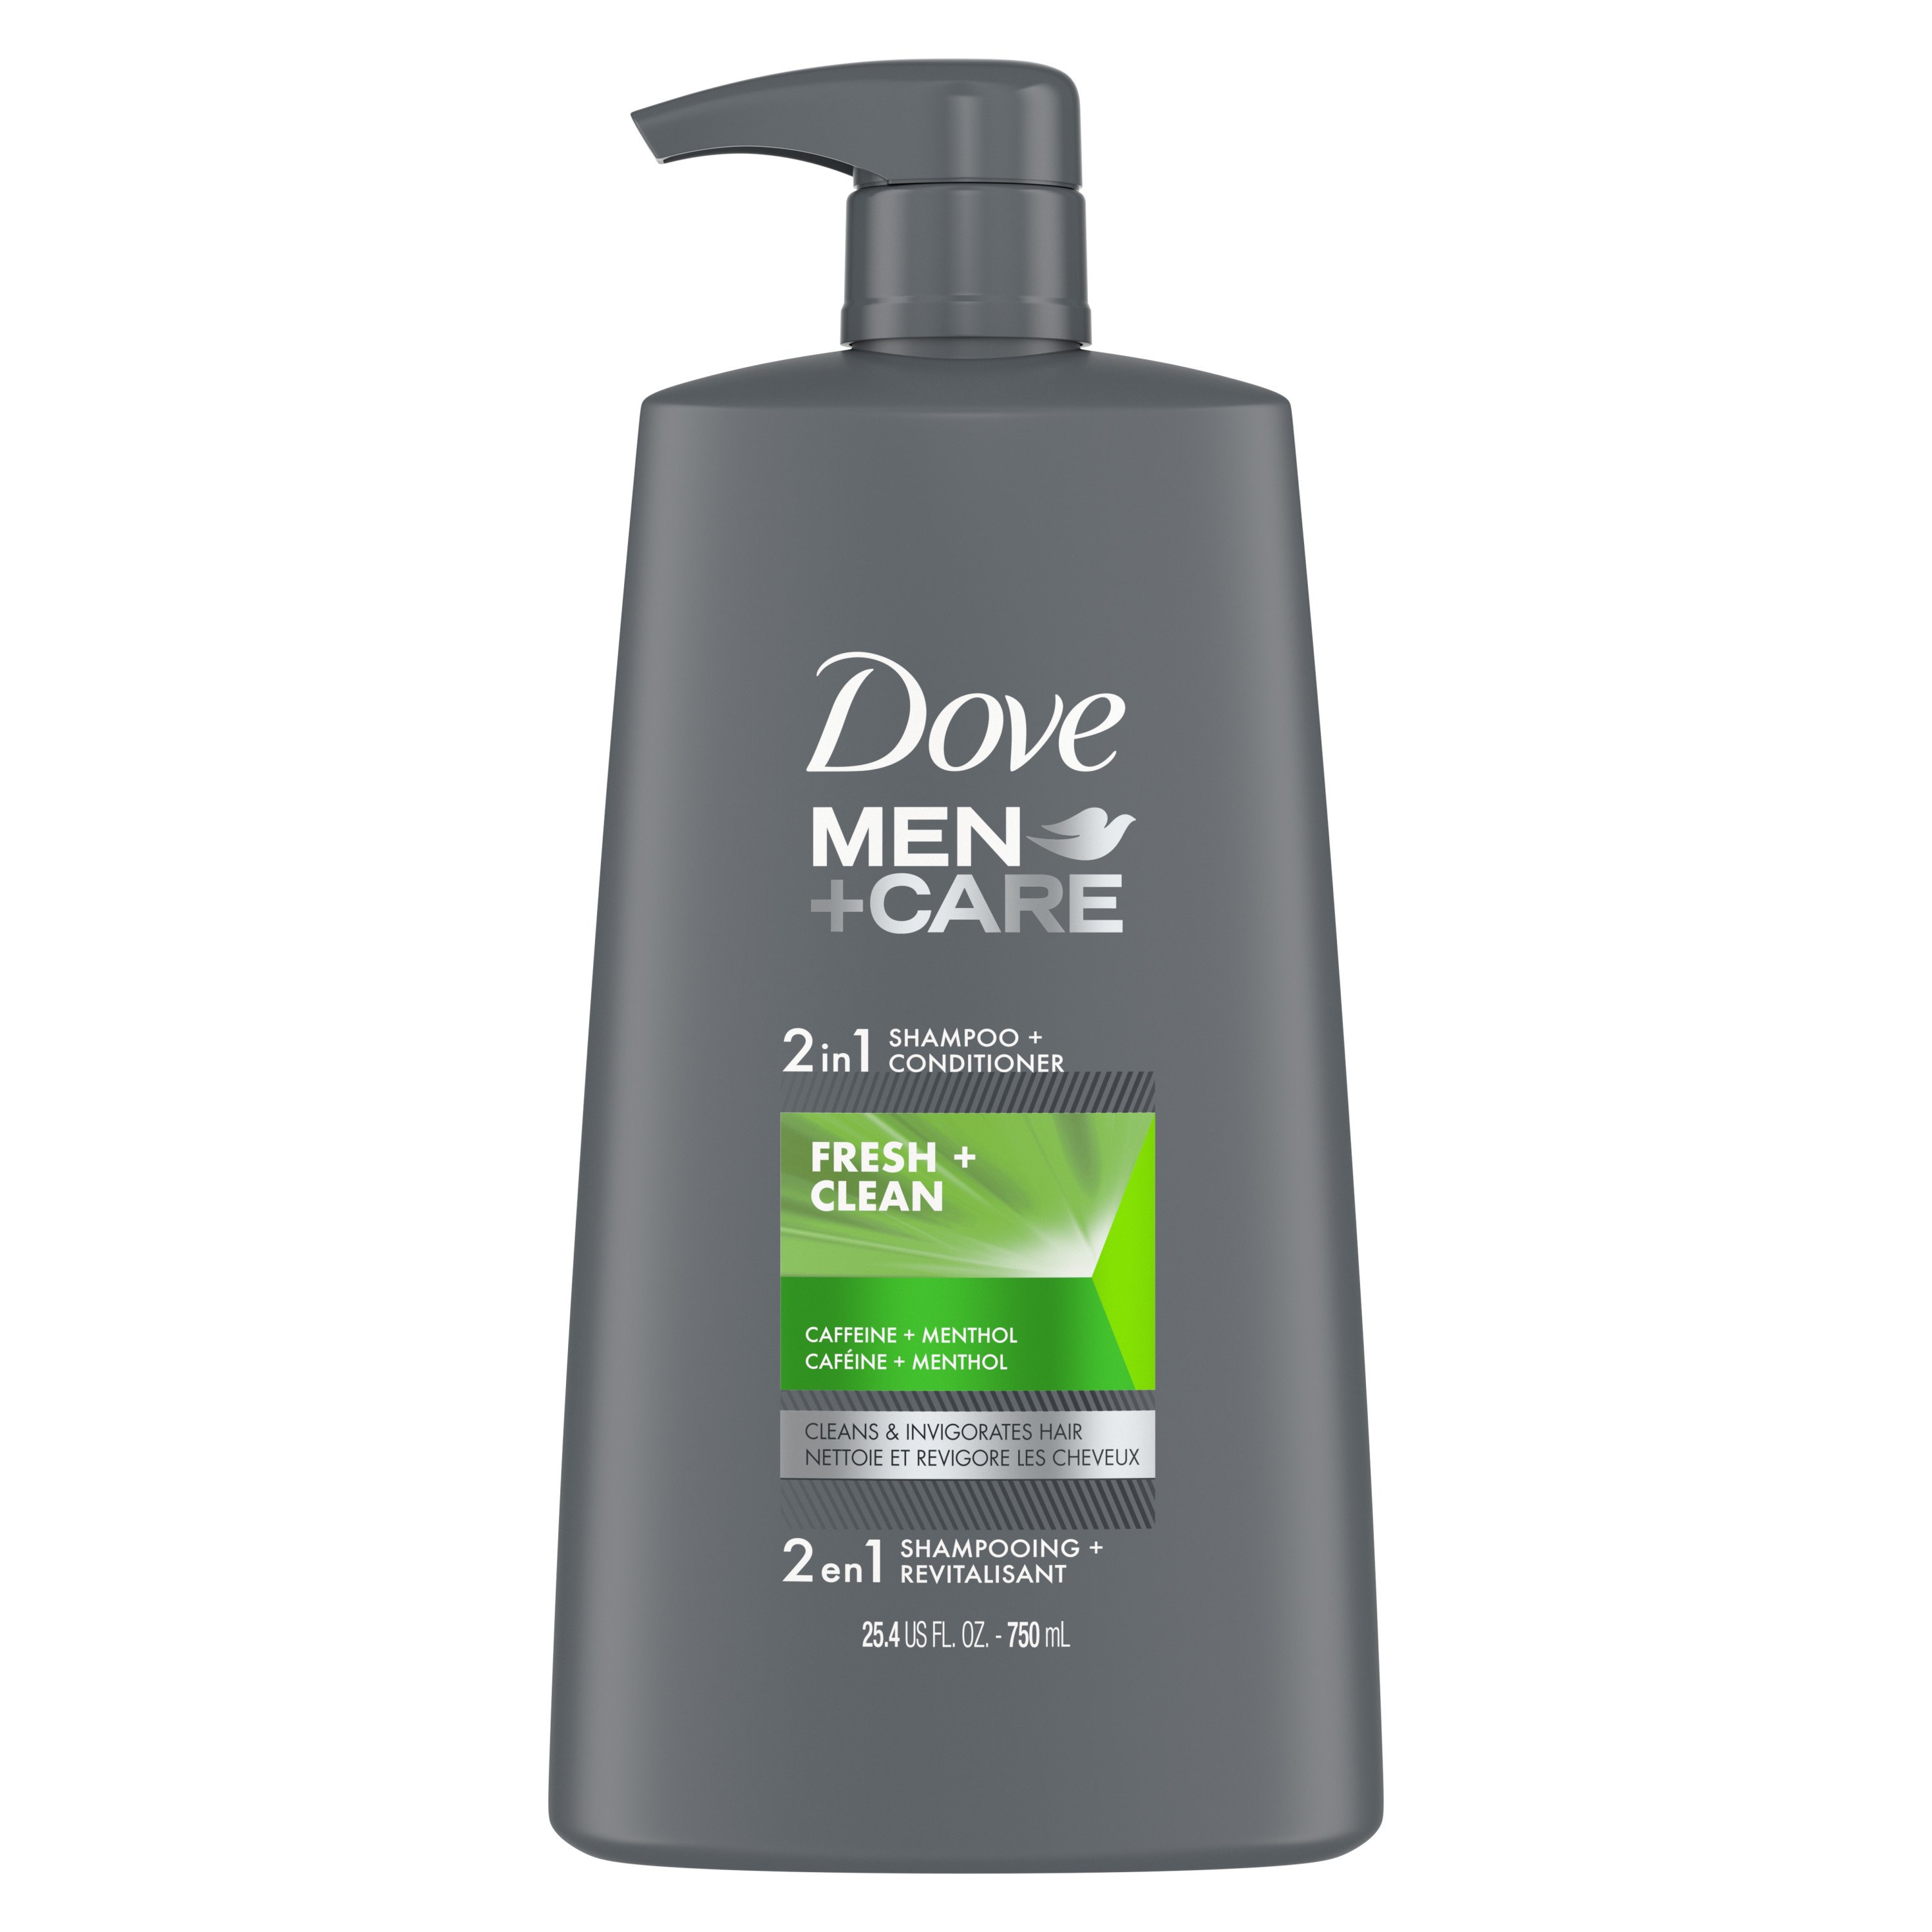 Dove Men+Care Shampoo + Conditioner - Fresh & Shop Shampoo & Conditioner at H-E-B